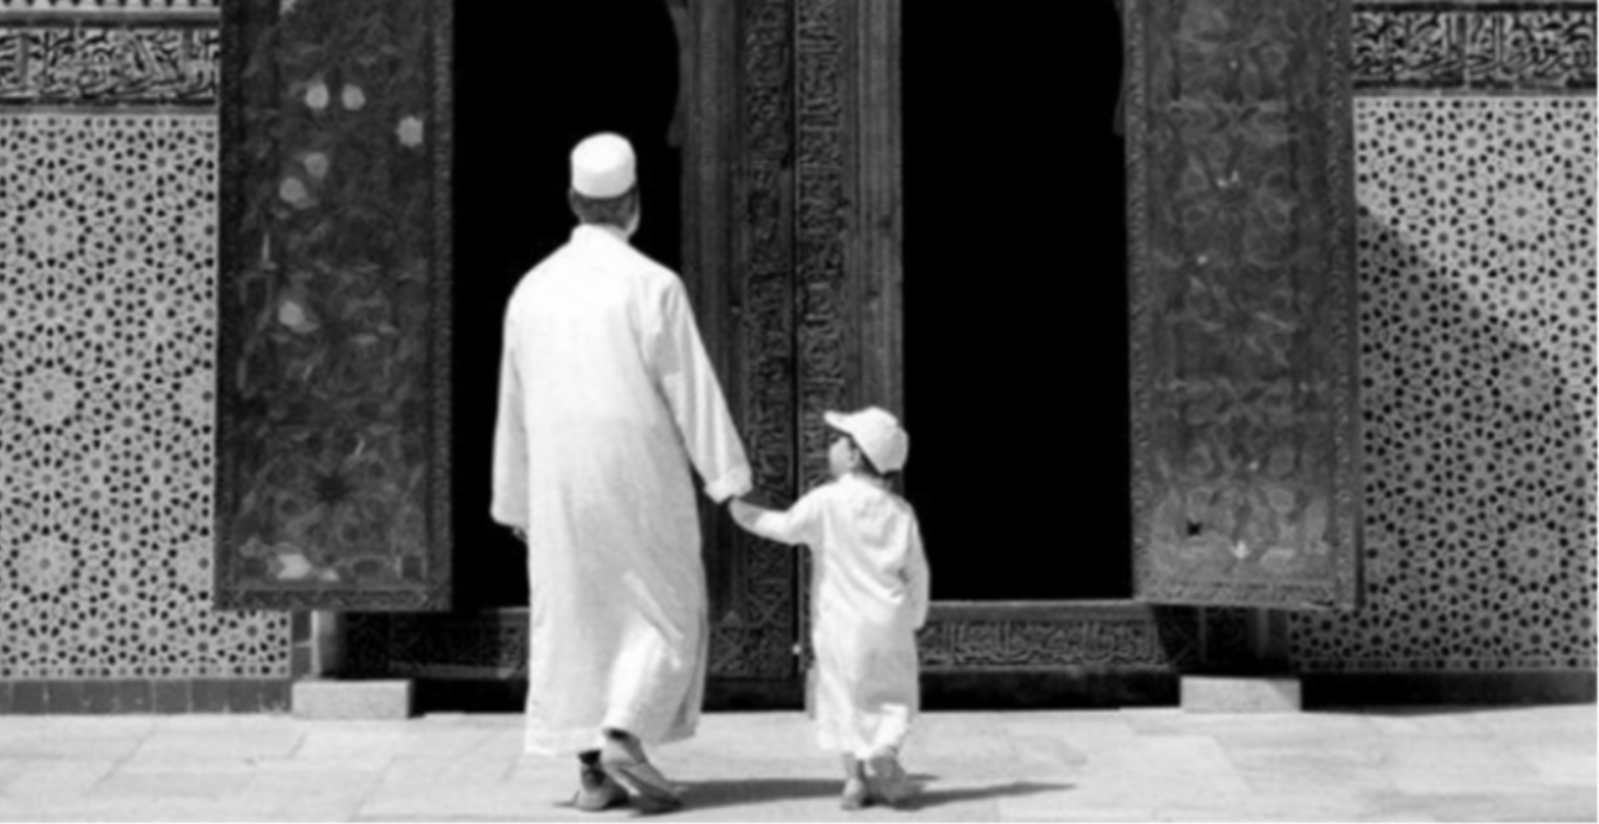 Menuju ke masjid menjadi bagian pemandangan kebaikan di masyarakat. (Foto: Istimewa)